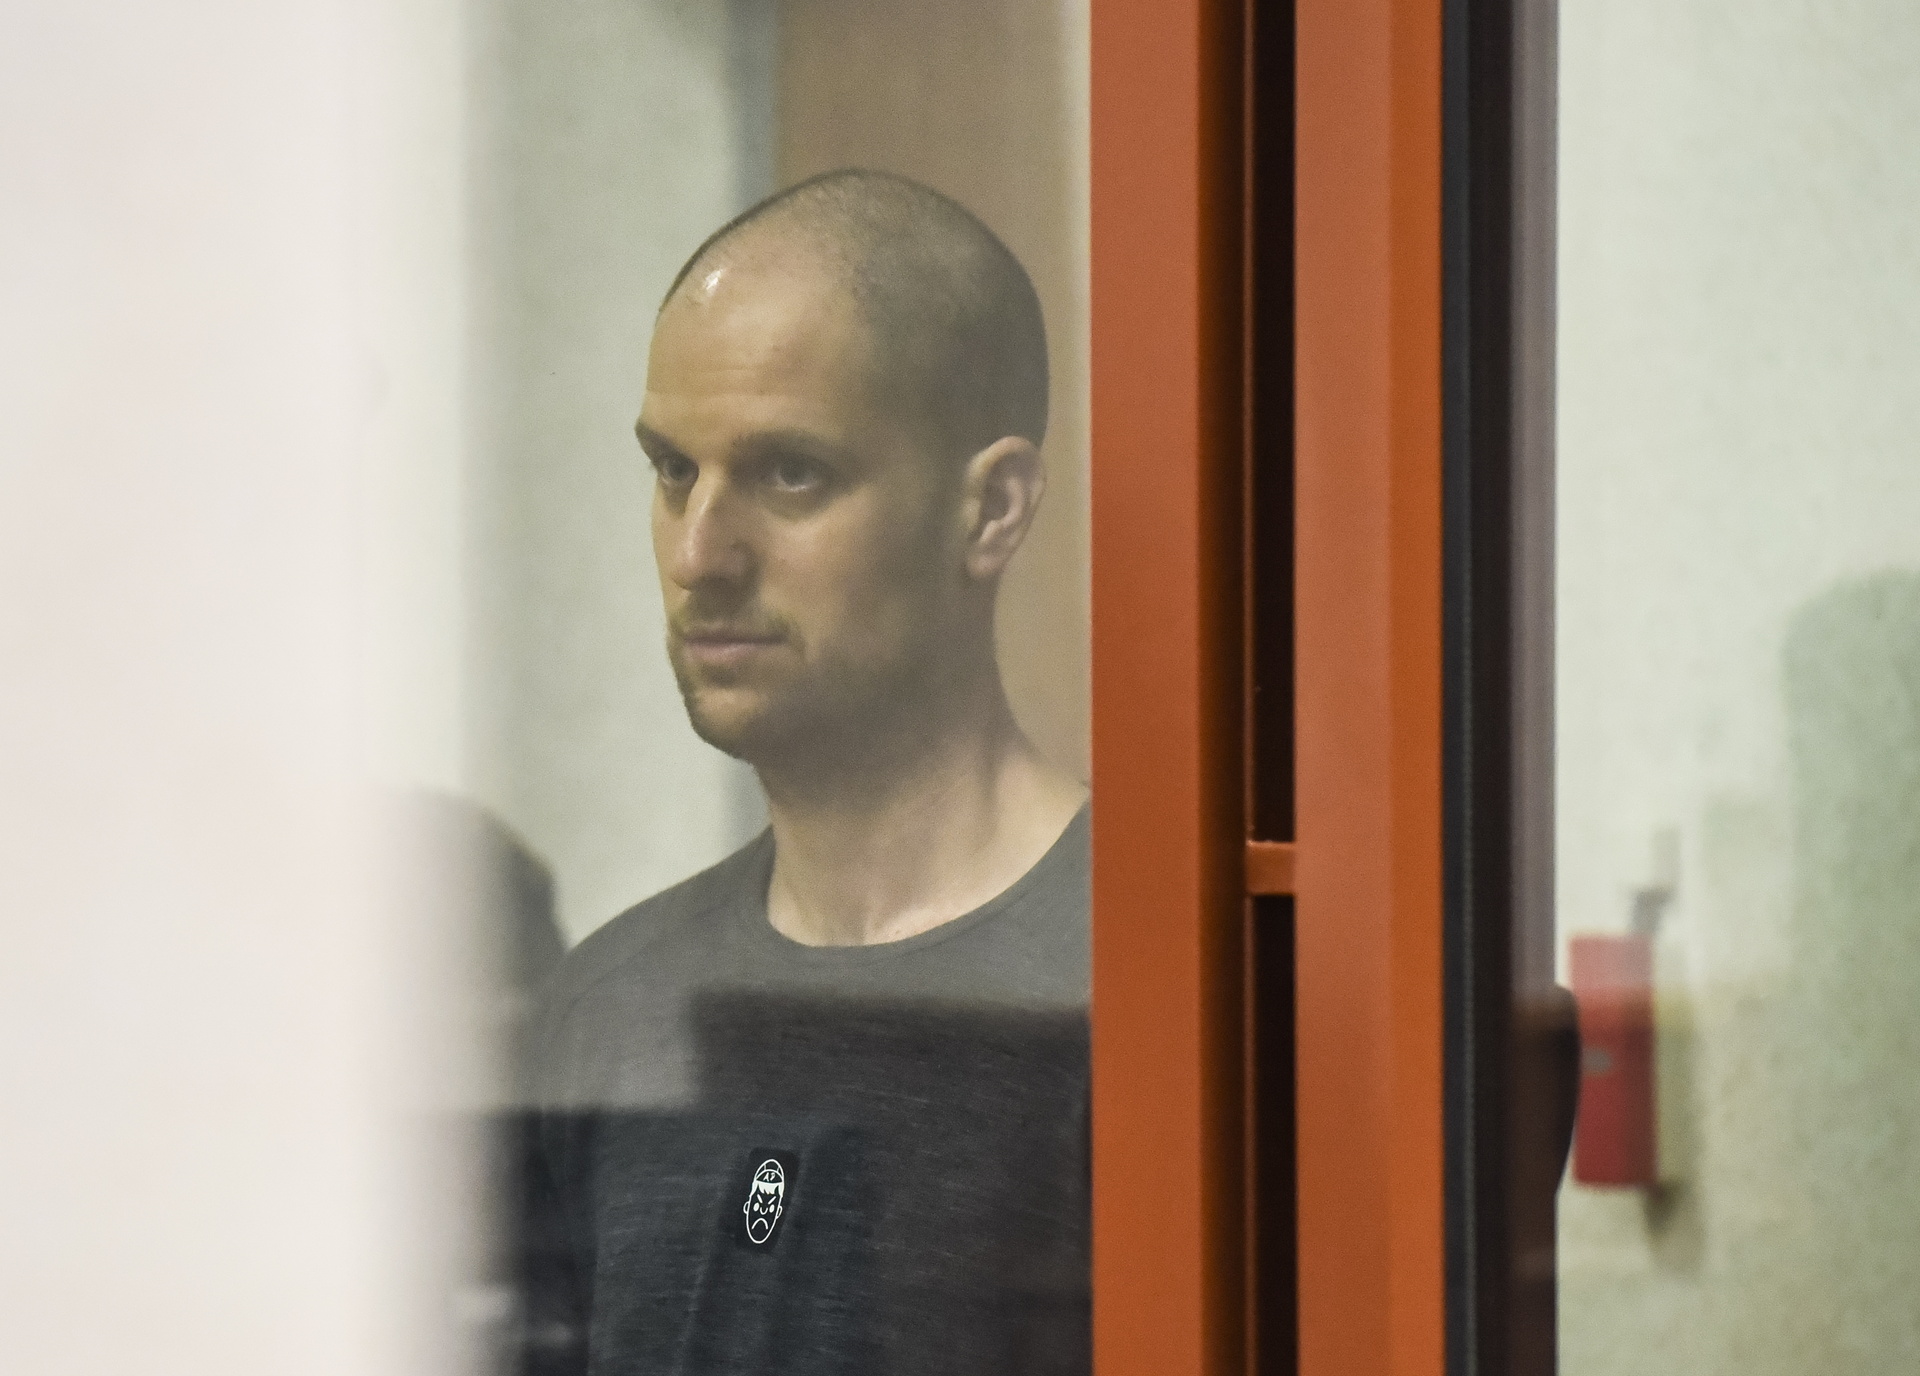 Rusia condena a 16 años al periodista estadounidense Evan Gershkovich por espionaje